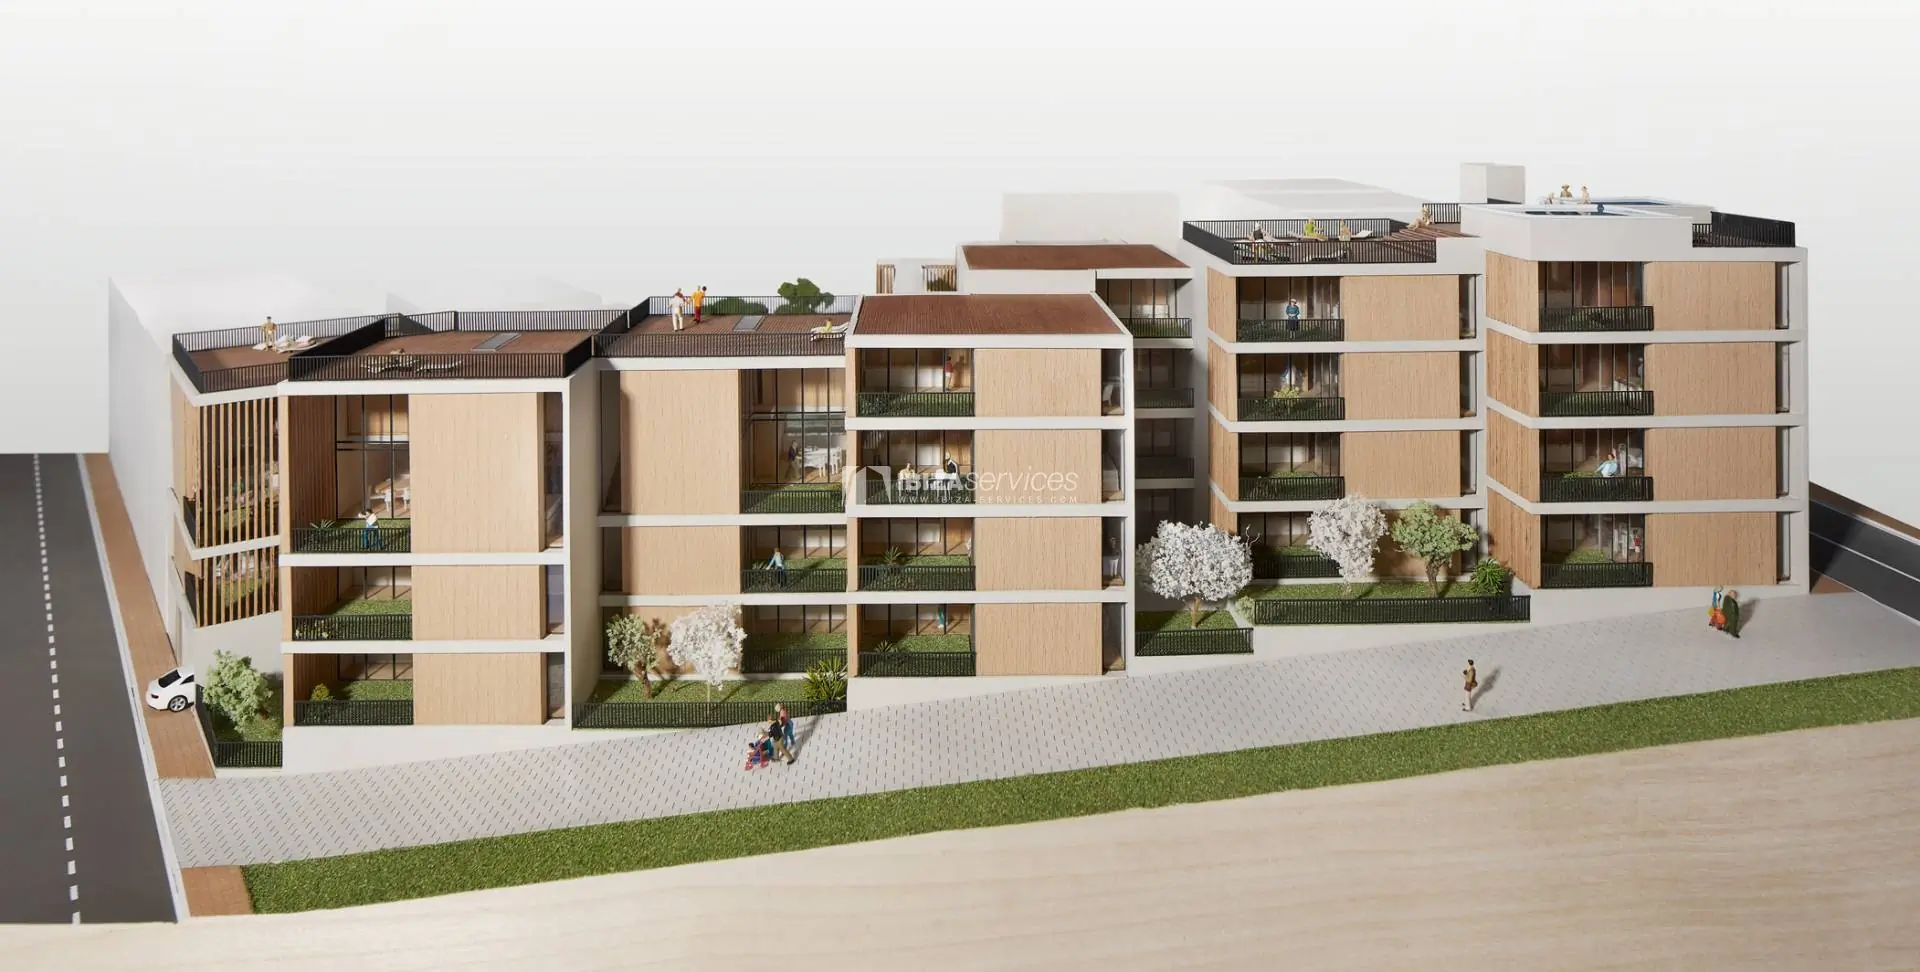 New Development in the centre of Santa Eulalia